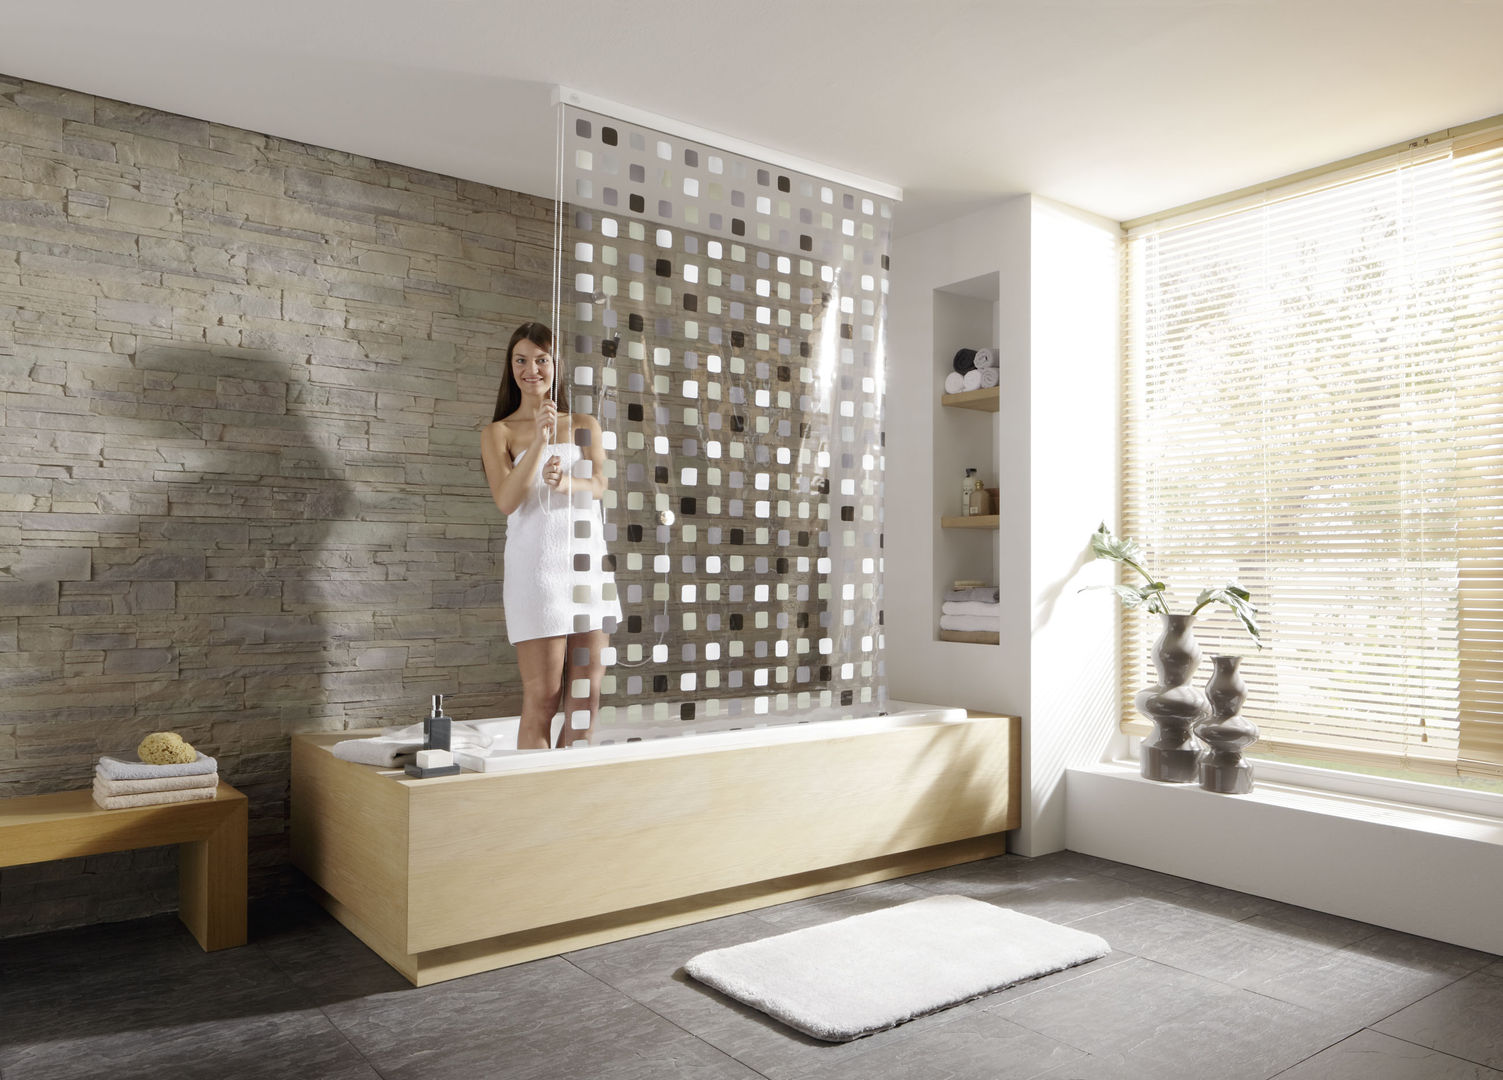 Bien commencer la journée !, Salle de Bains Déco.com Salle de Bains Déco.com Eclectic style bathroom Plastic Bathtubs & showers